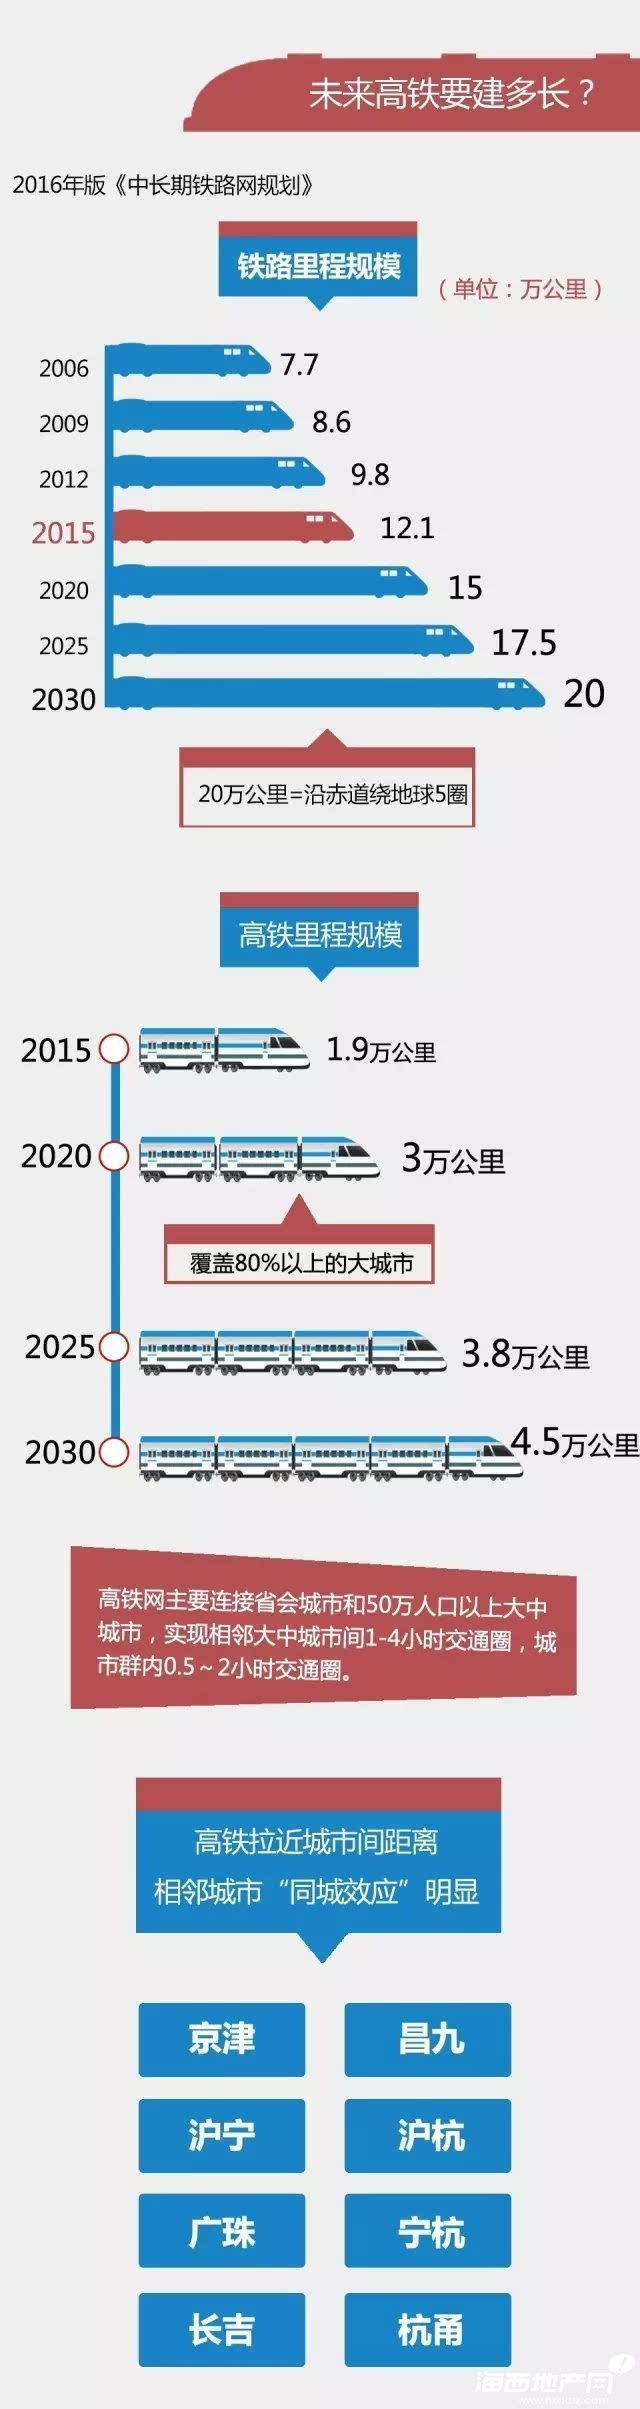 到2020BOB体育年中国铁路将实现三个“世界领先”和三大提升